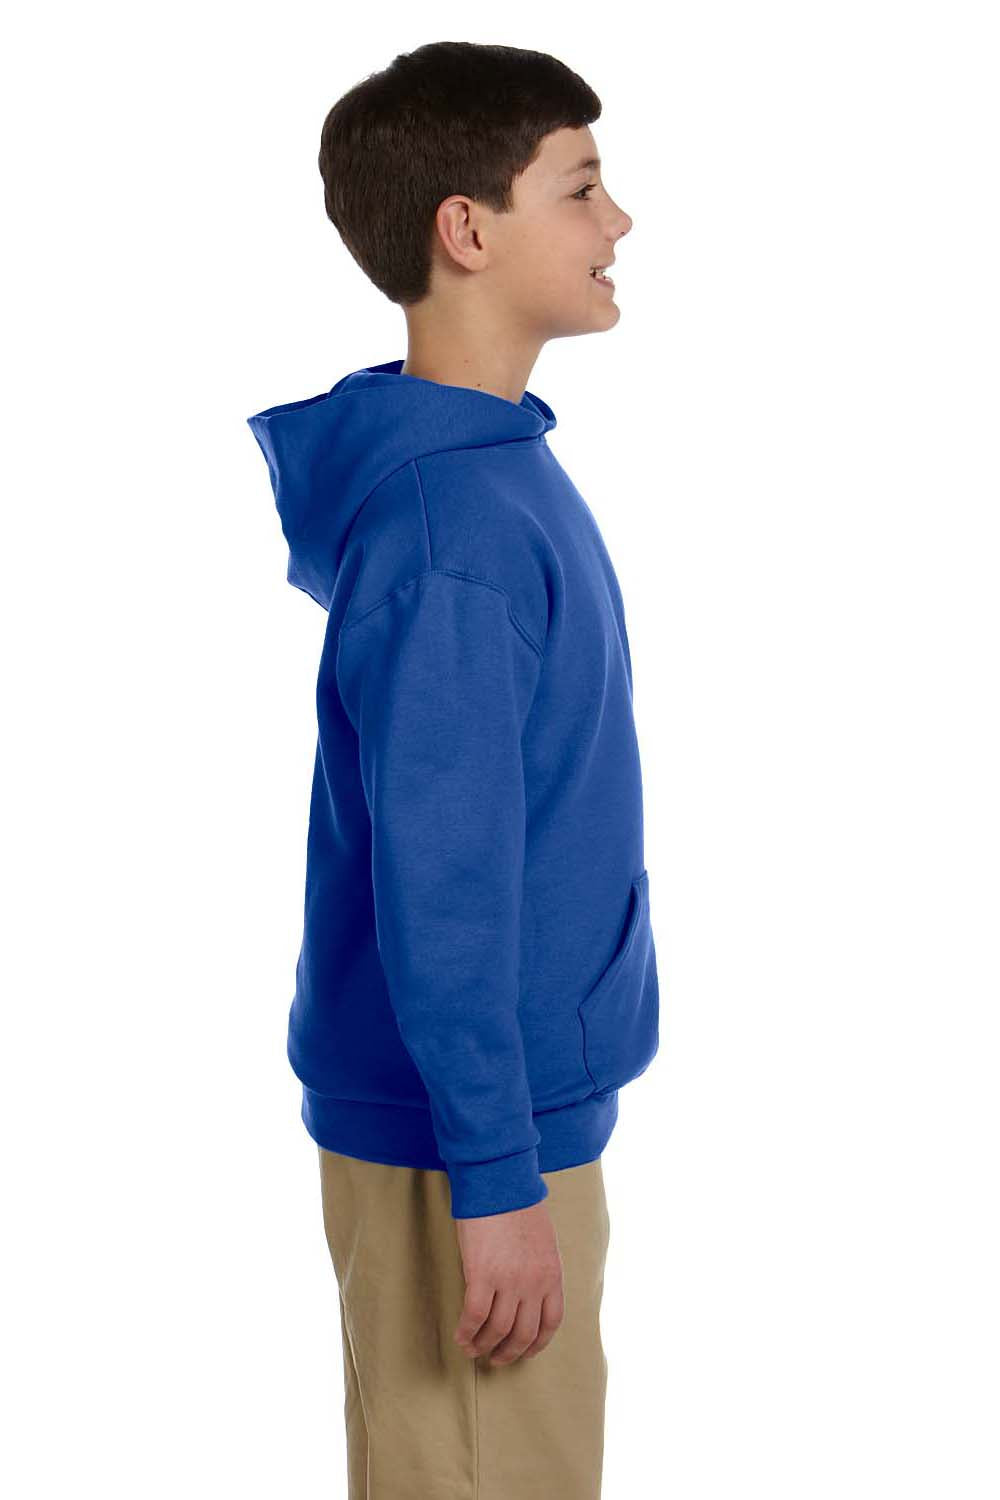 Jerzees 996Y Youth NuBlend Fleece Hooded Sweatshirt Hoodie Royal Blue Side